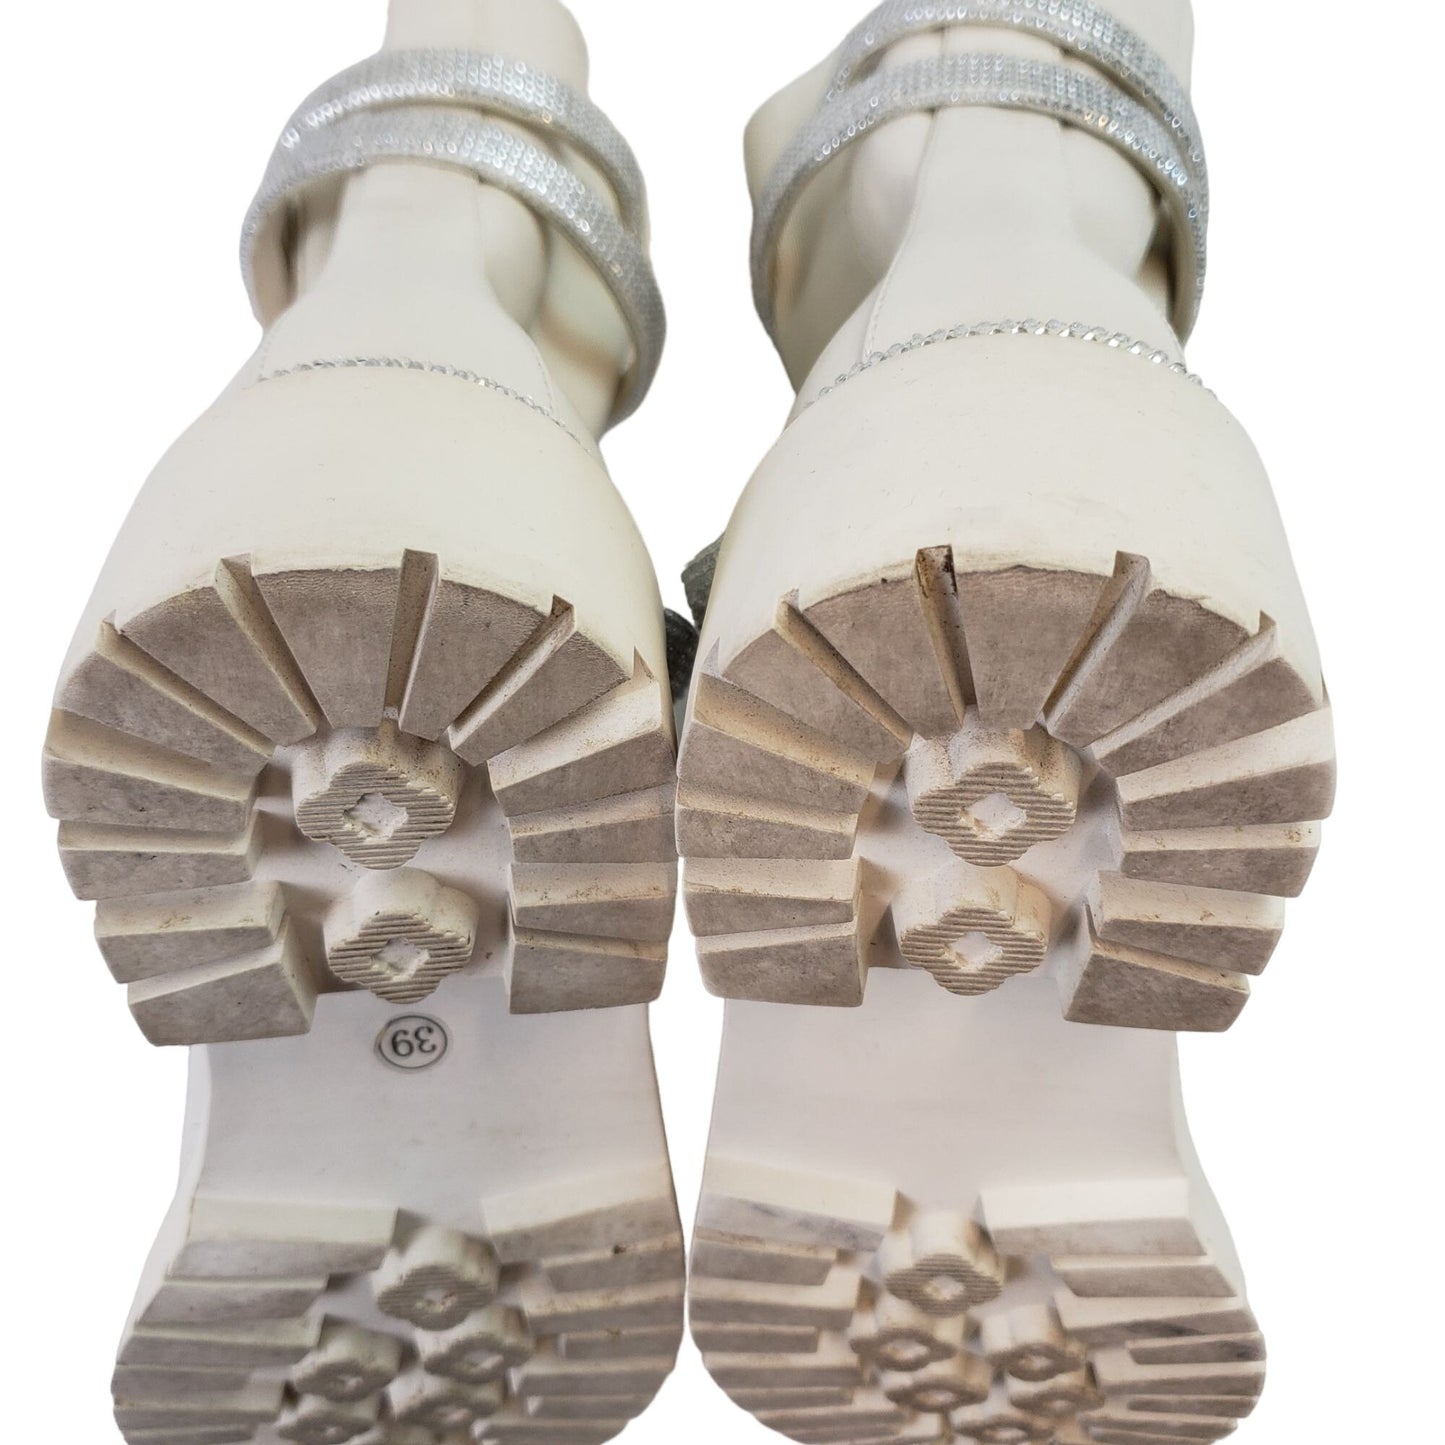 Unbranded Vegan Leather Crystal Embellished Chelsea Snake Boots Size 39/8.5 US